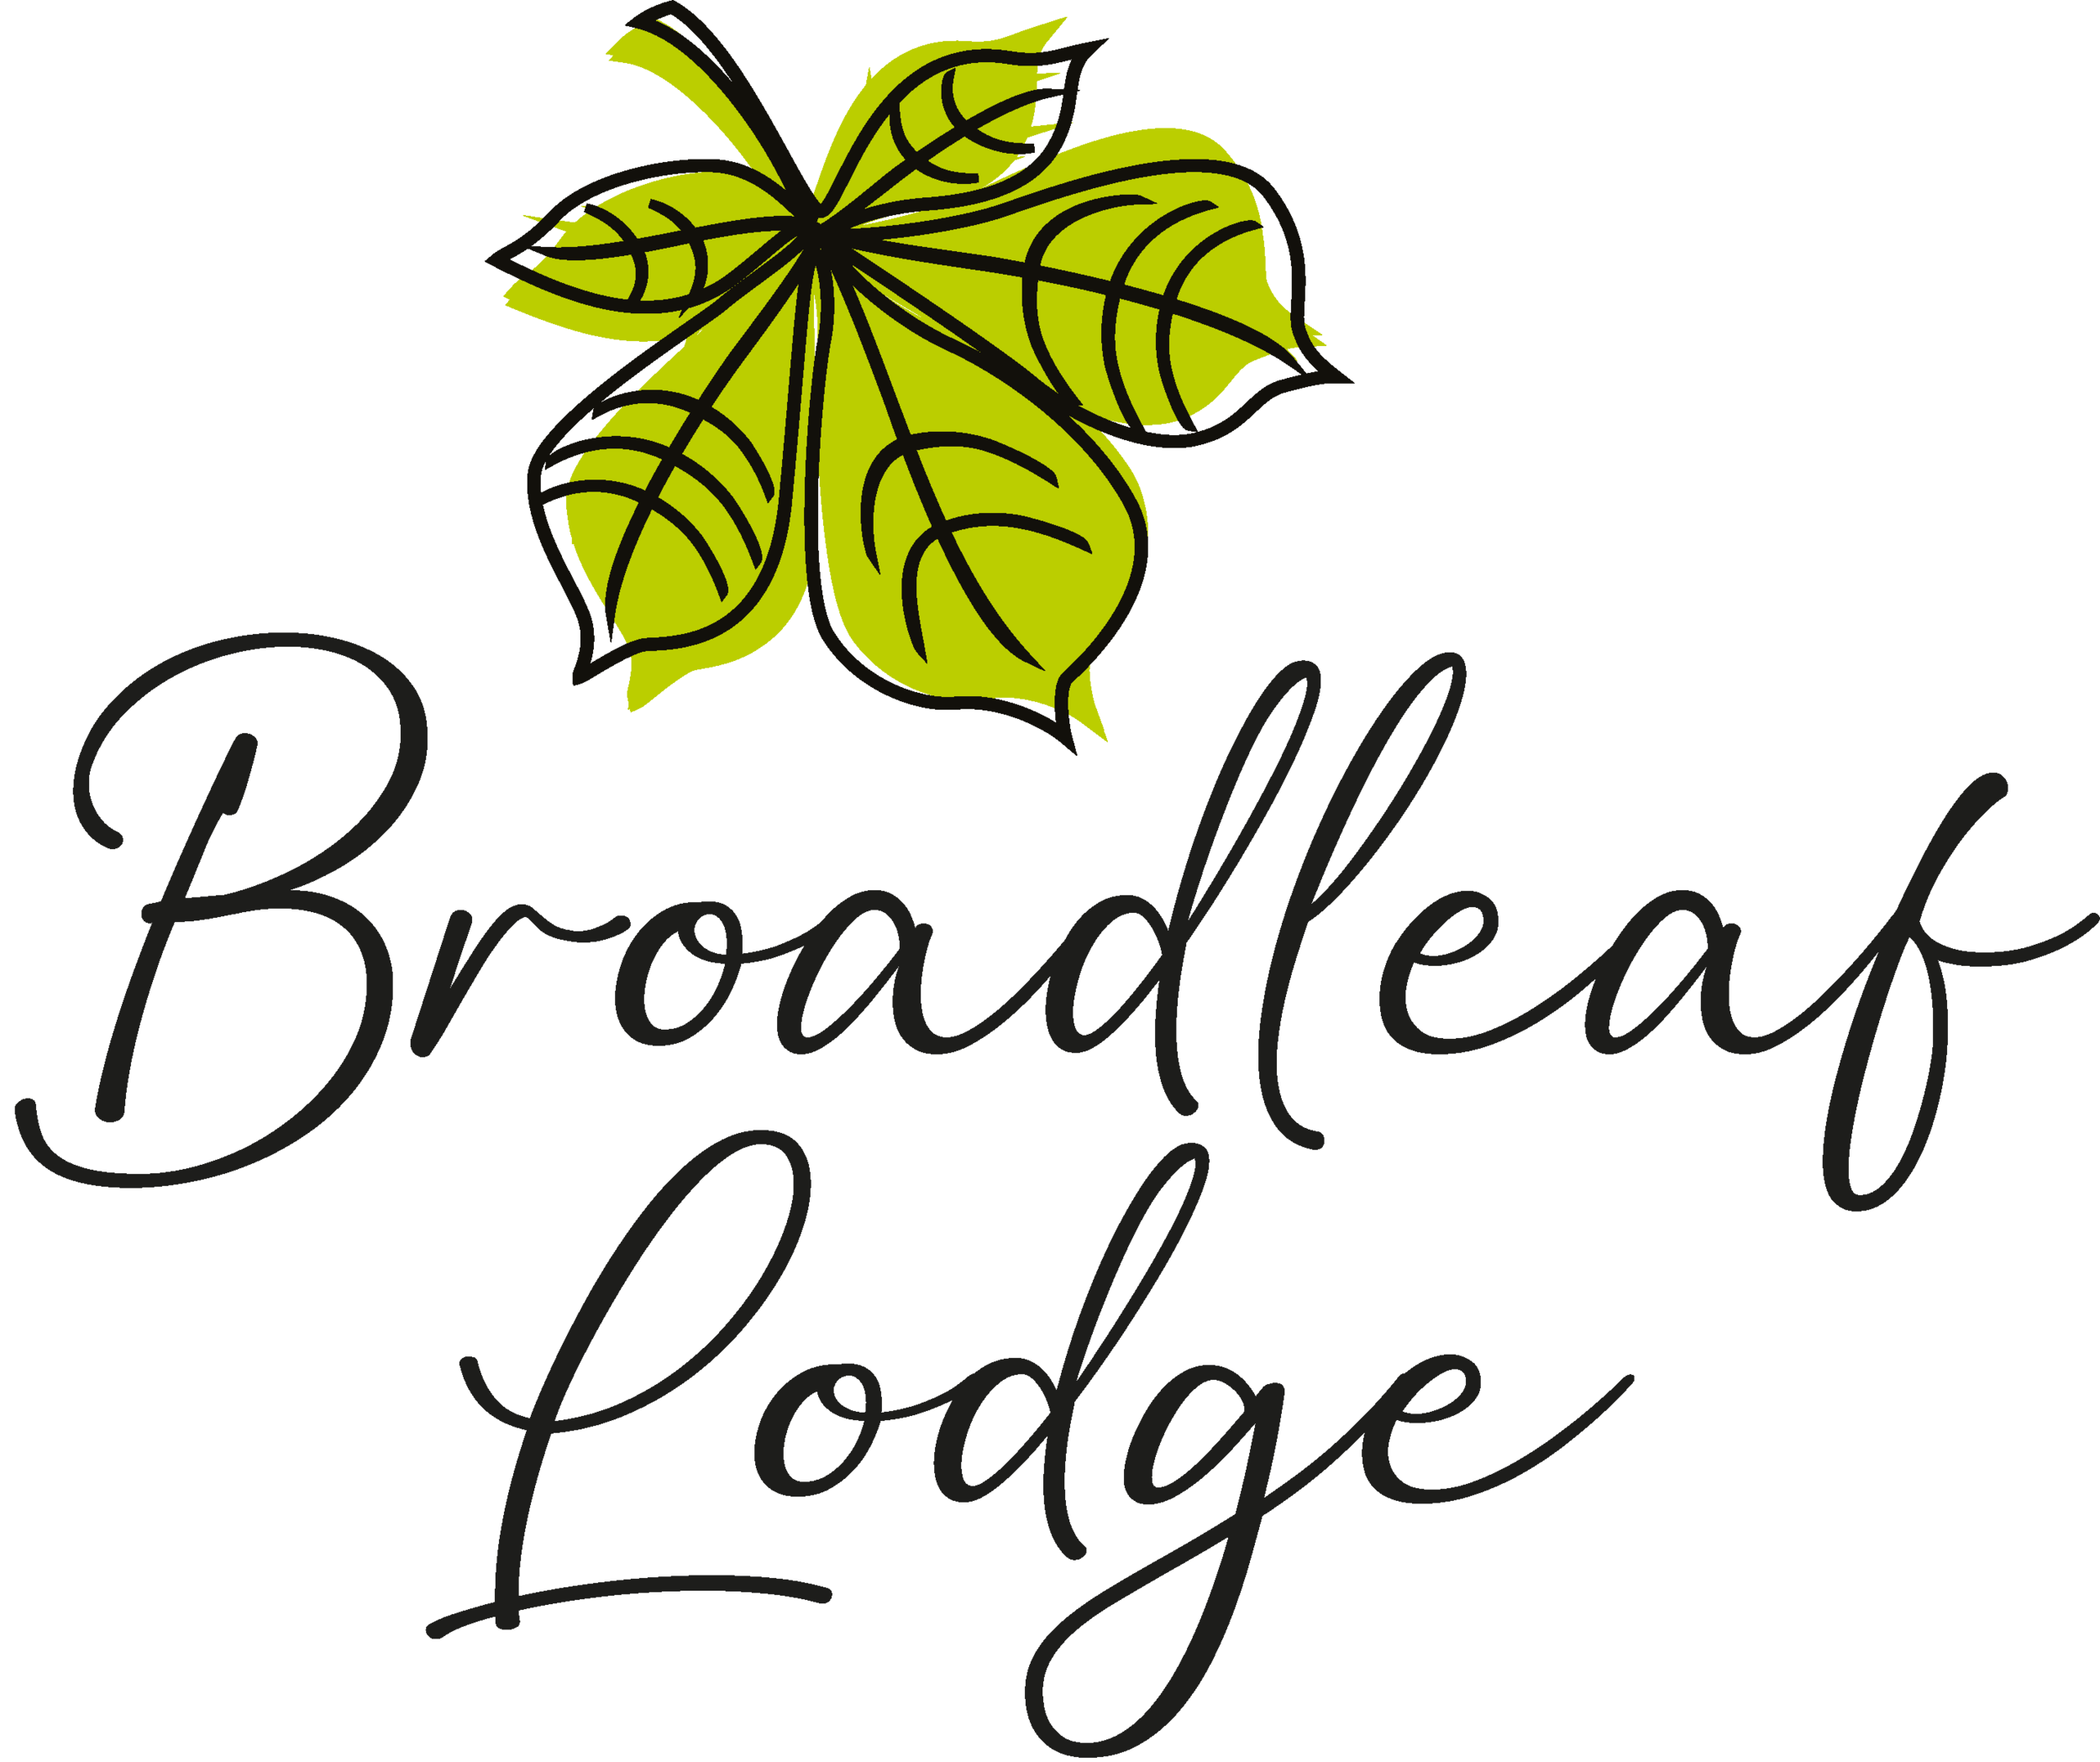 Broadleaf Lodge